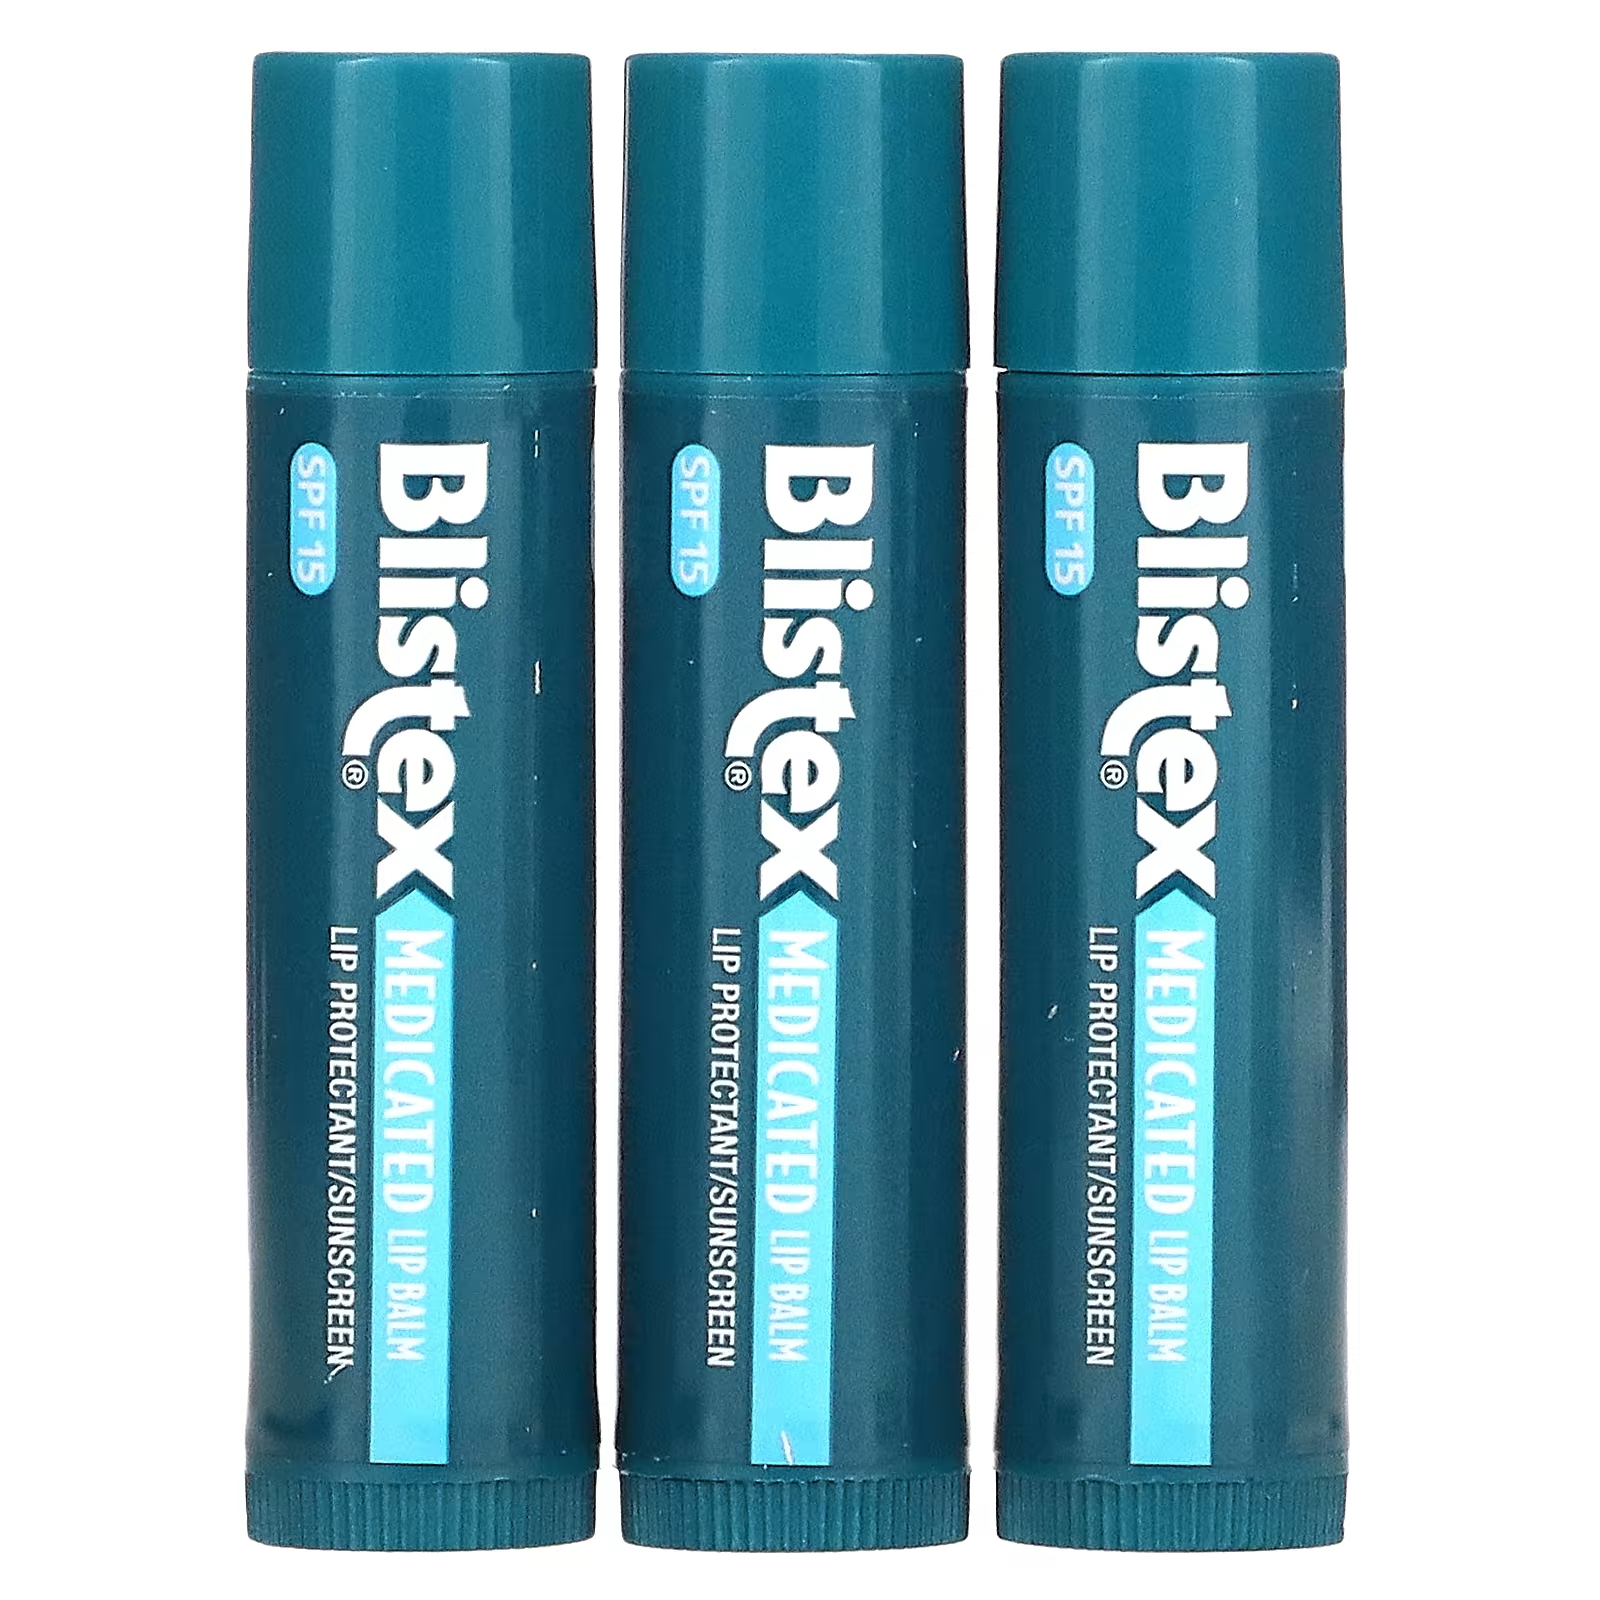 Blistex Лекарственное средство для защиты губ/солнцезащитный крем SPF 15, оригинальная упаковка из 3 бальзамов по 0,15 унции (4,25 г) каждая фотографии